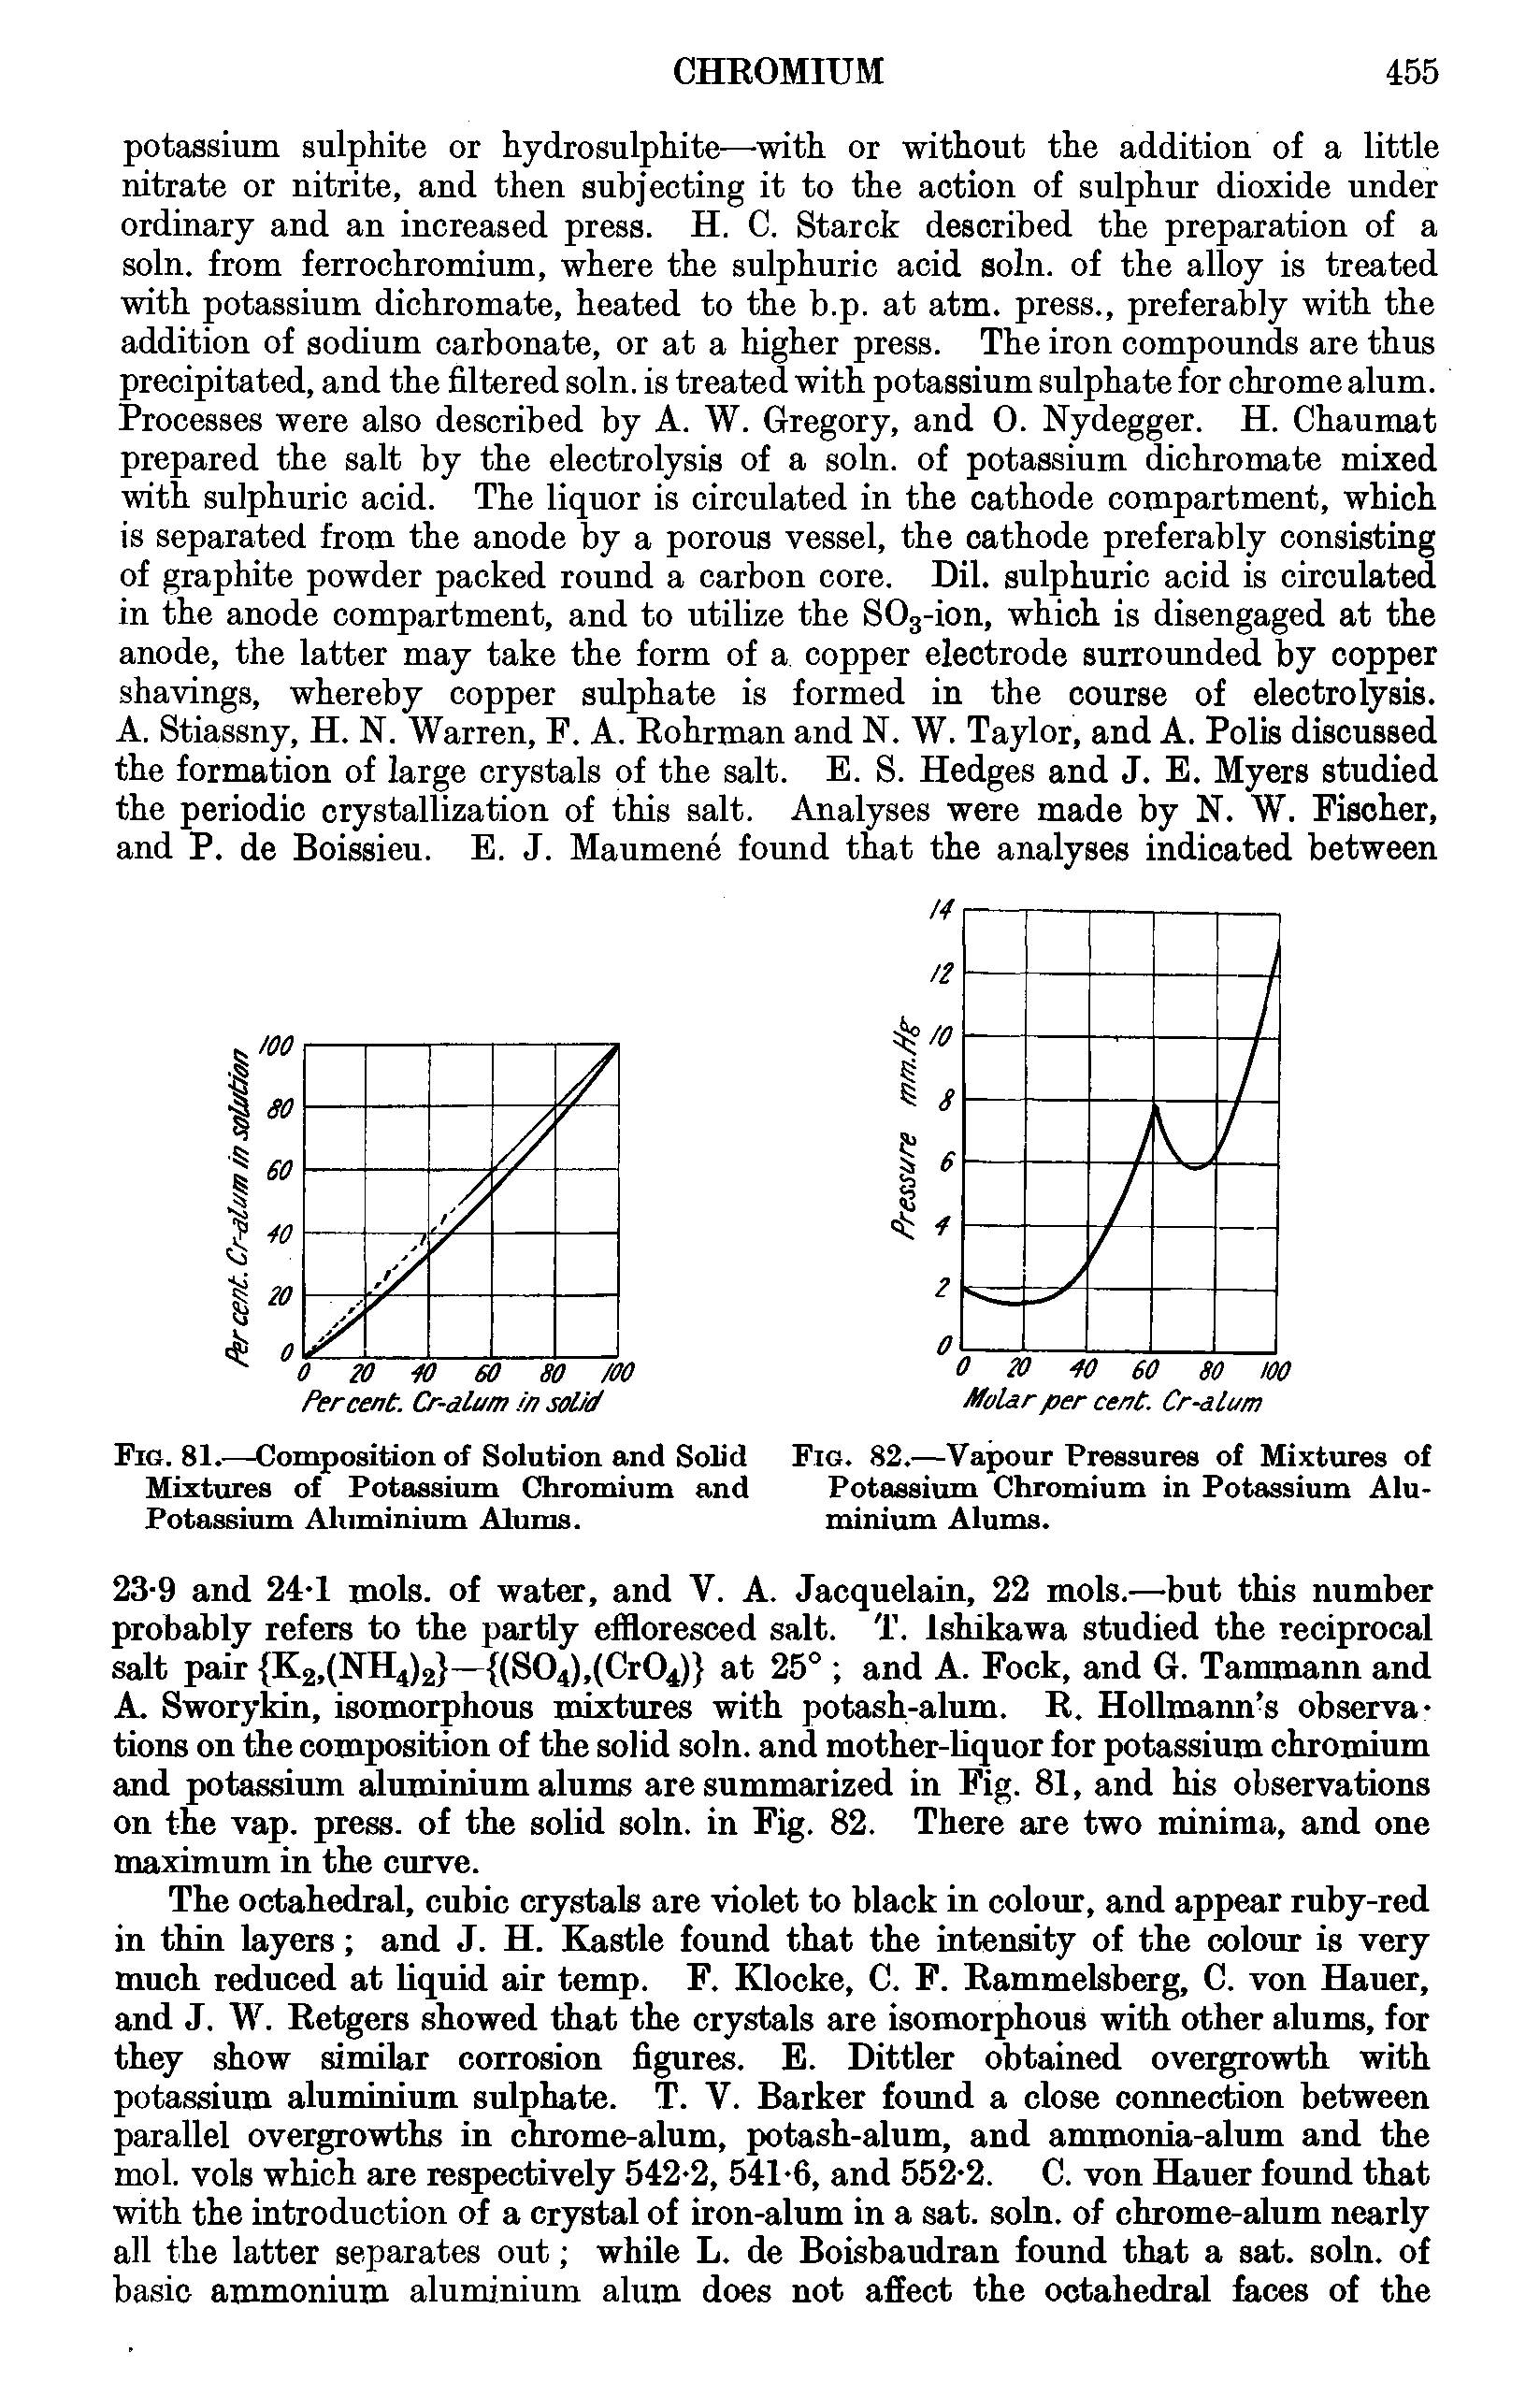 Fig. 82.—Vapour Pressures of Mixtures of Potassium Chromium in Potassium Aluminium Alums.